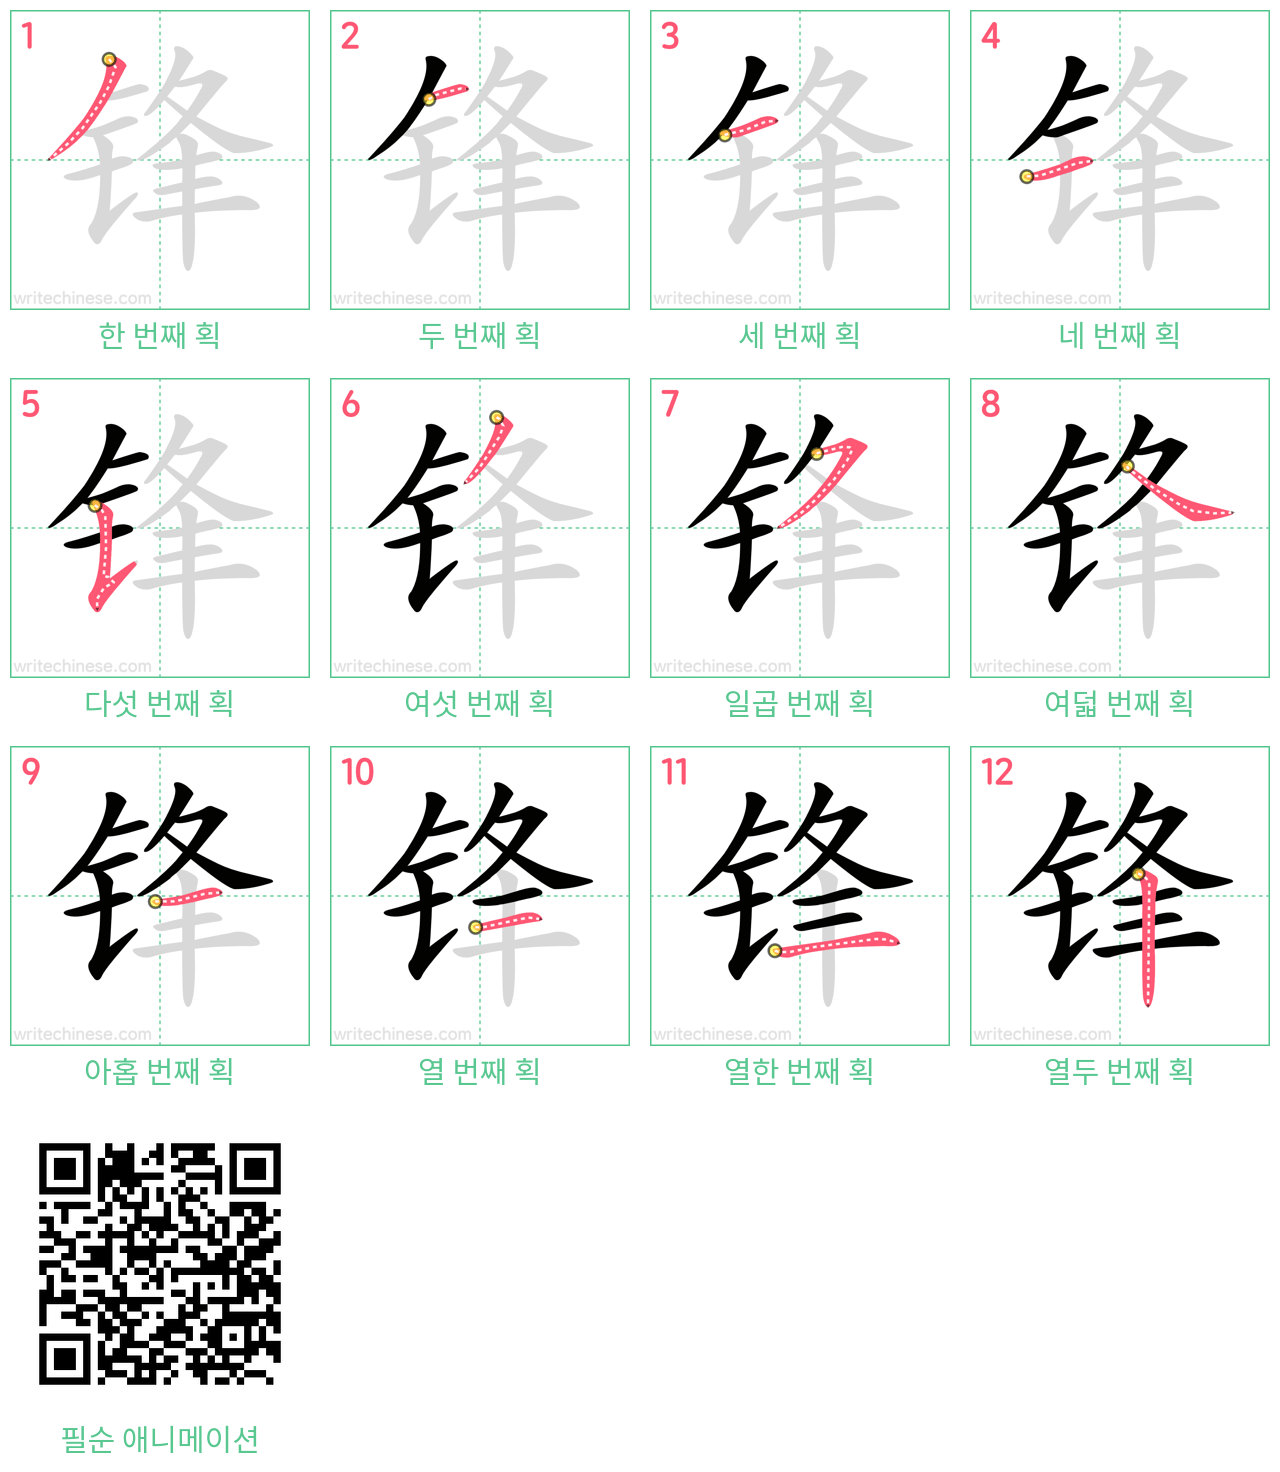 锋 step-by-step stroke order diagrams